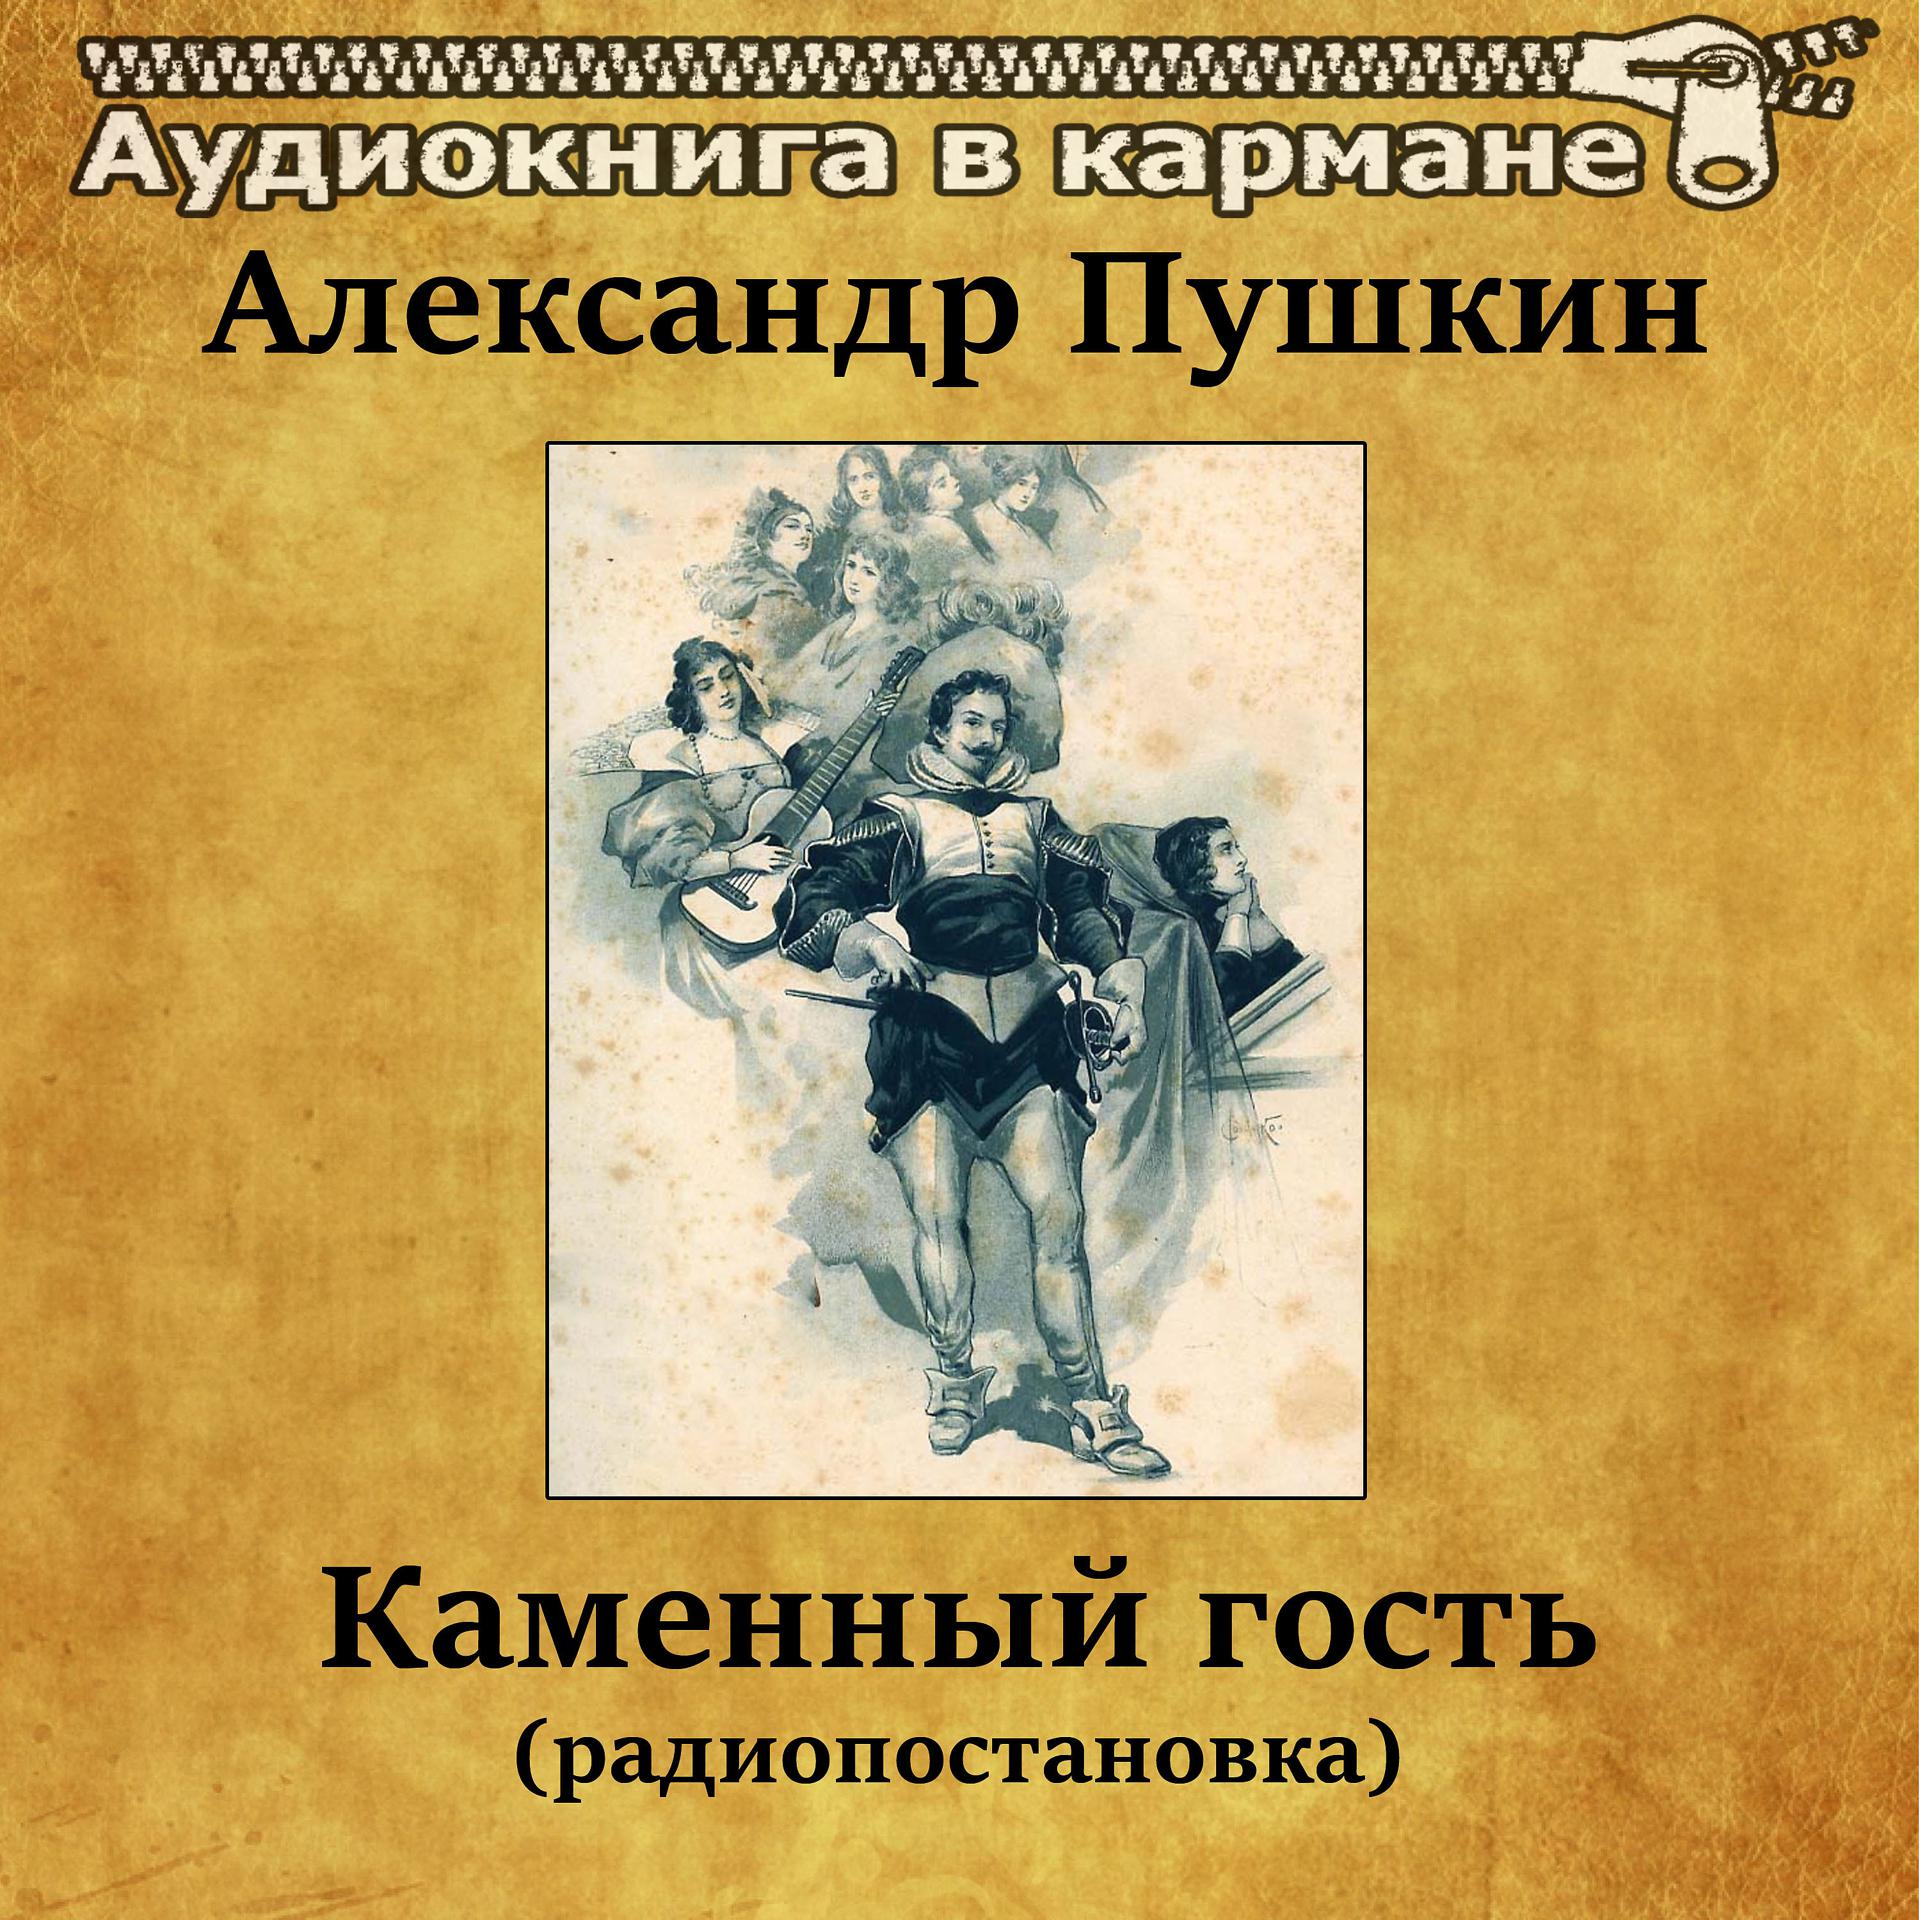 Постер альбома Александр Пушкин - Каменный гость (радиопостановка)